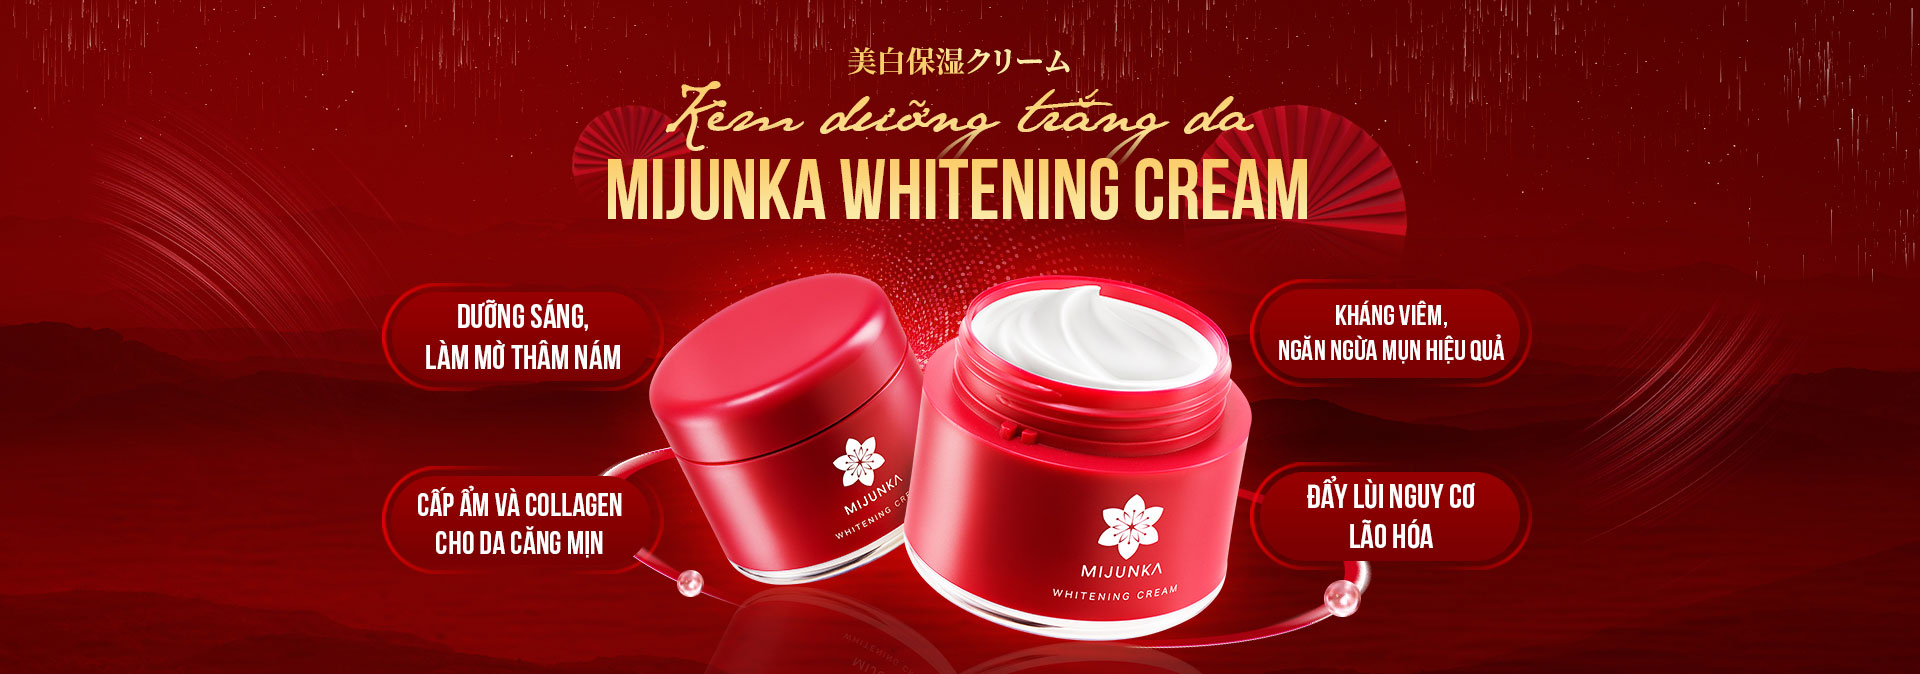 Slide-Web-Mijunka-cream